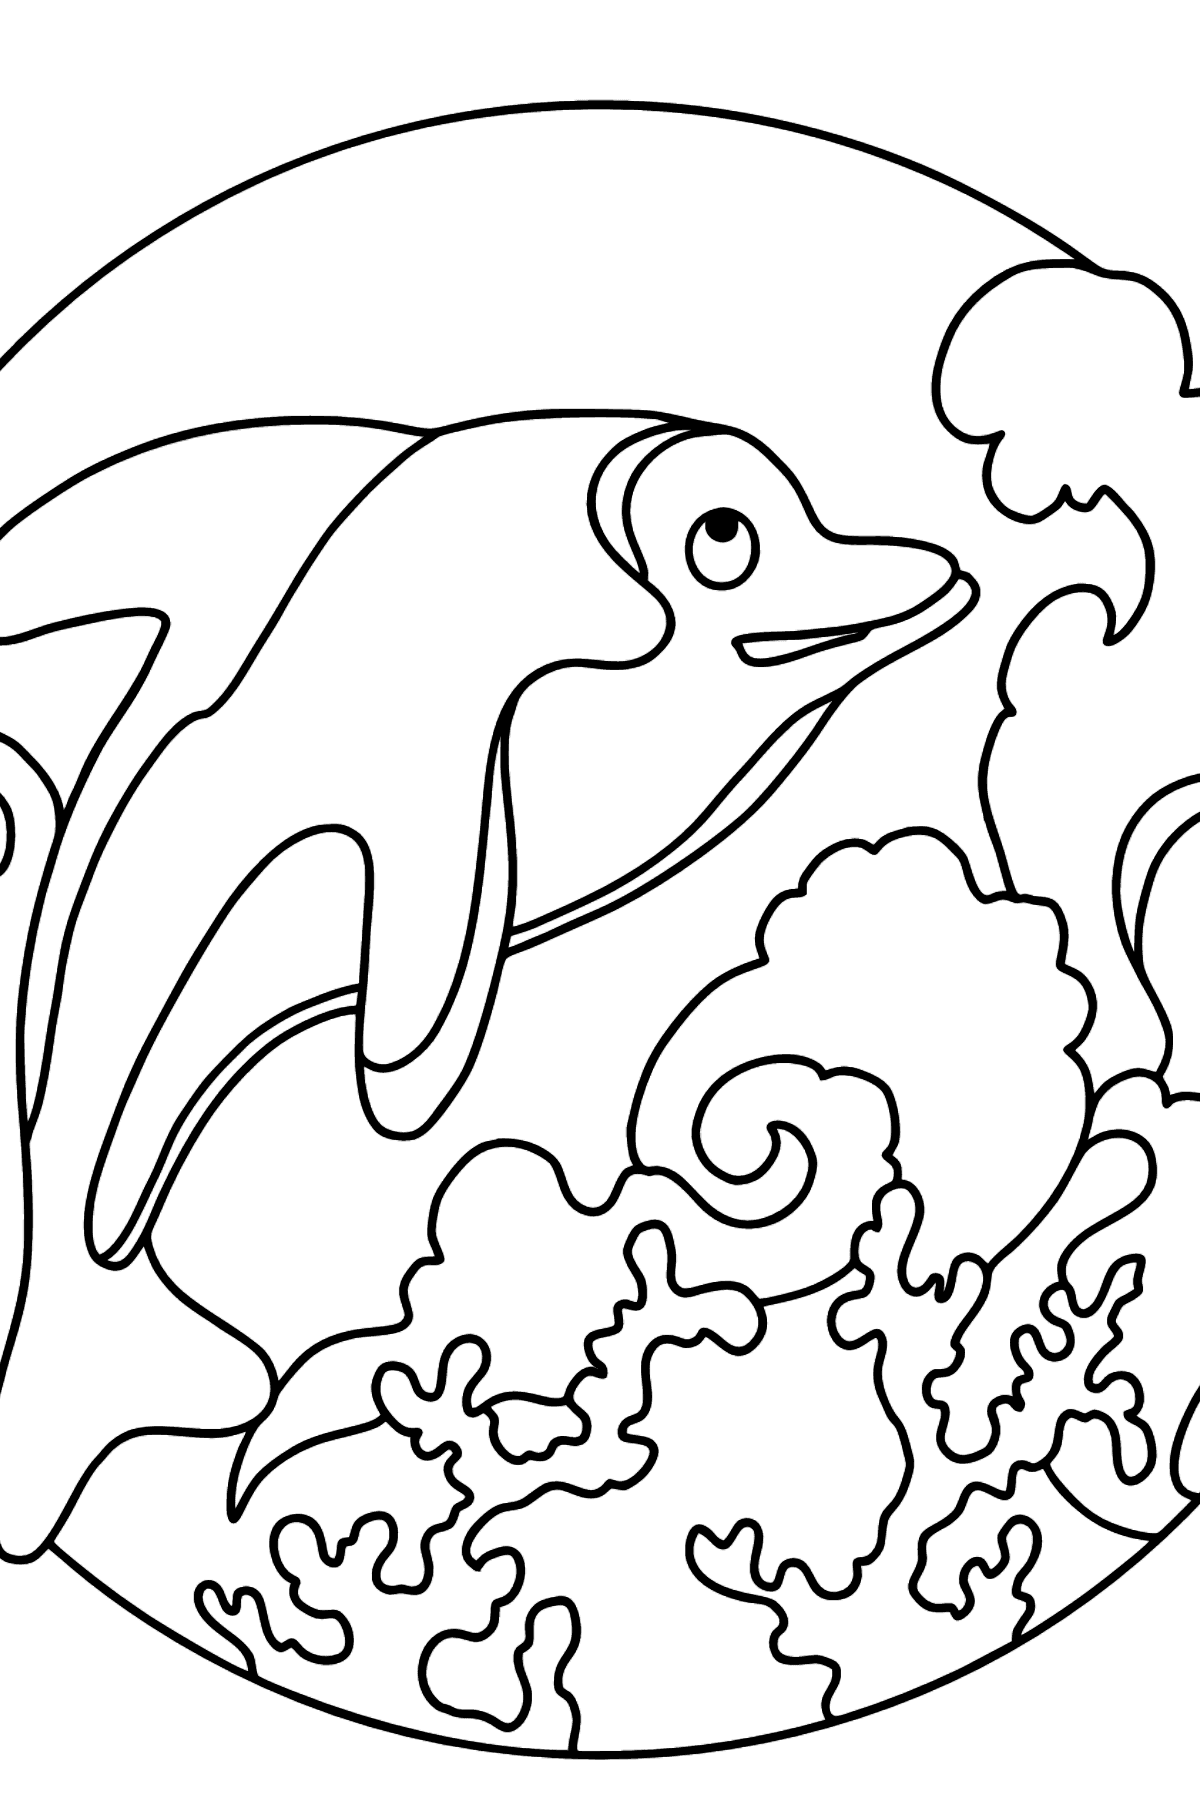 Tegning til fargelegging delfin (vanskelig) - Tegninger til fargelegging for barn